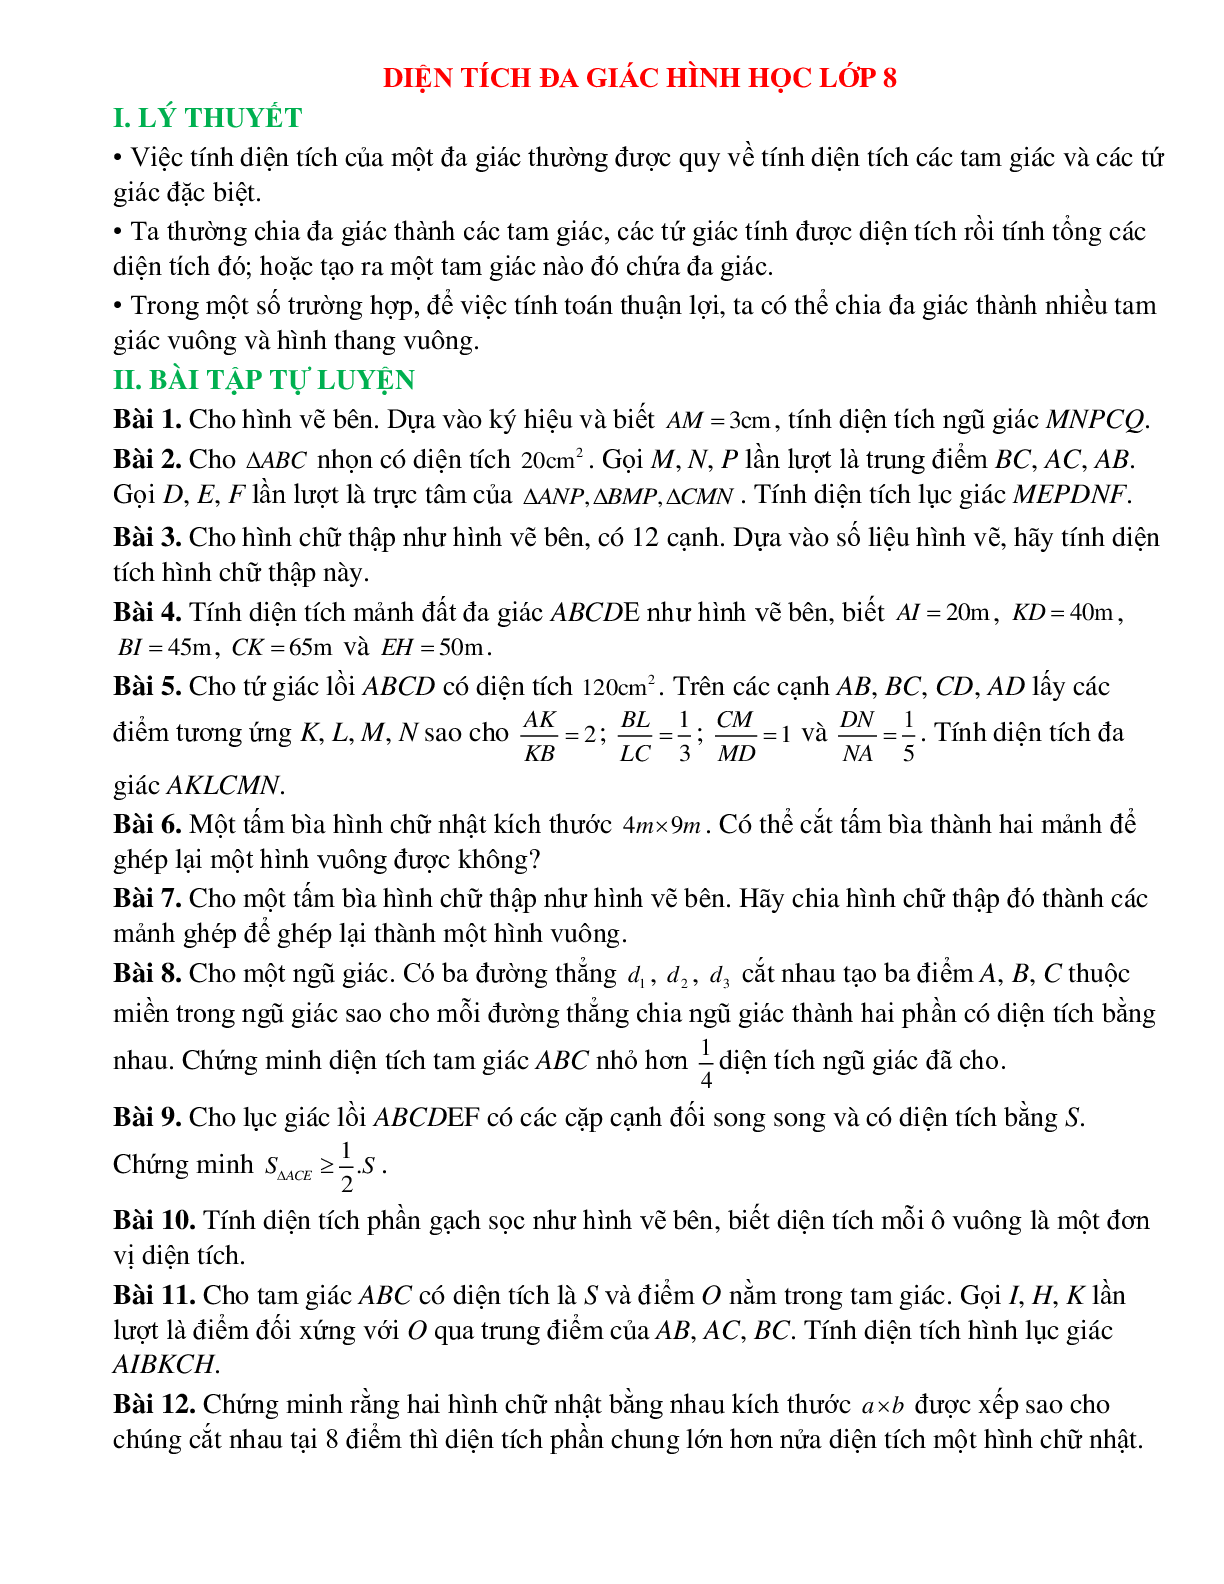 Diện tích đa giác hình học lớp 8 (trang 1)